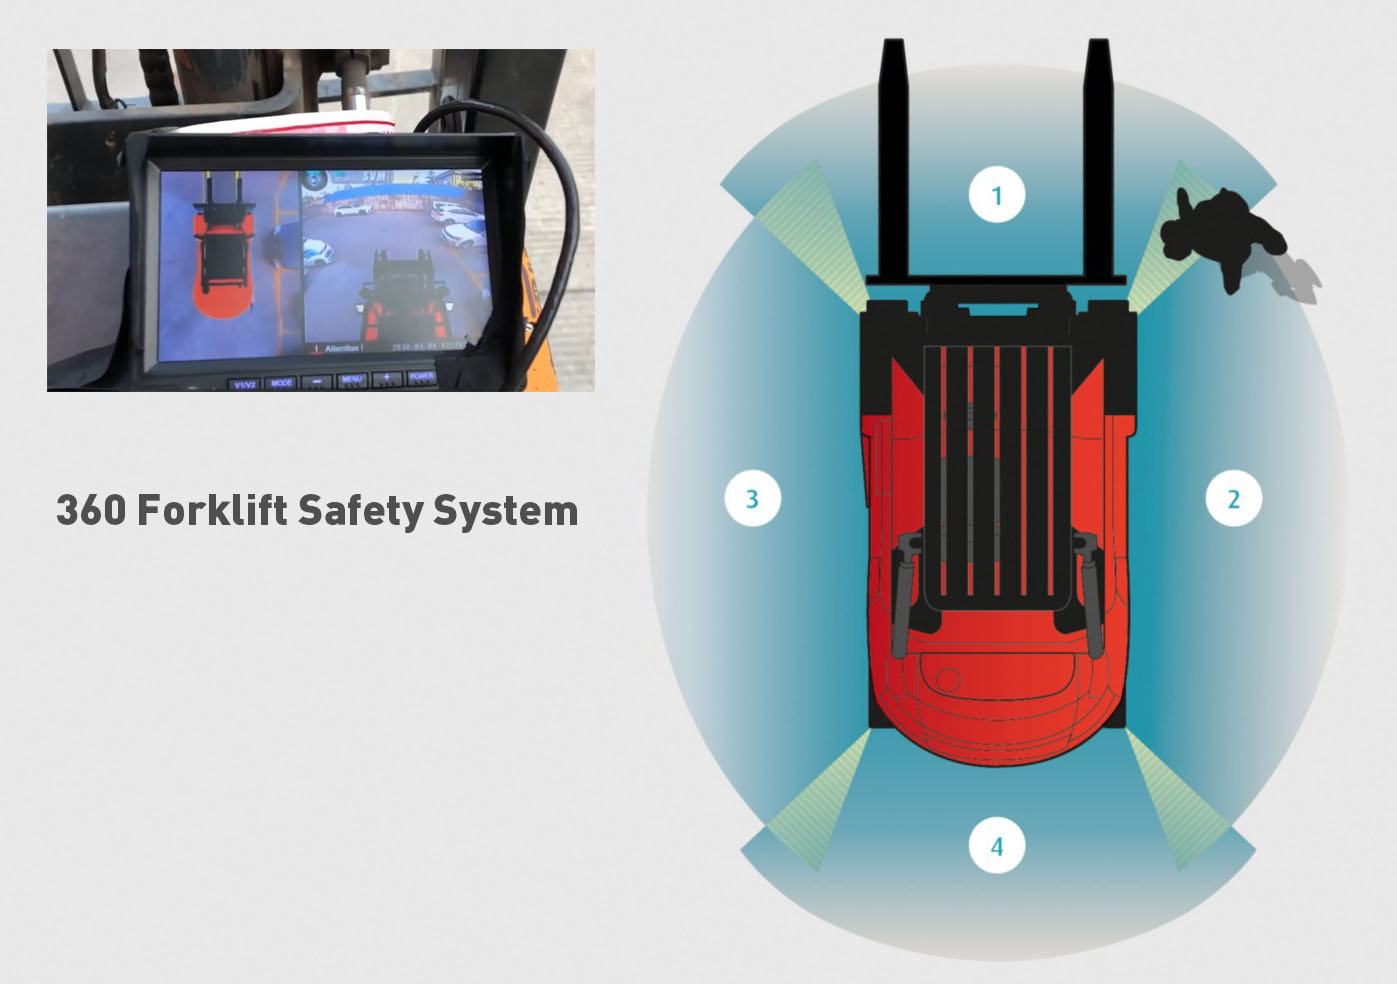 360 Forklift Safety System